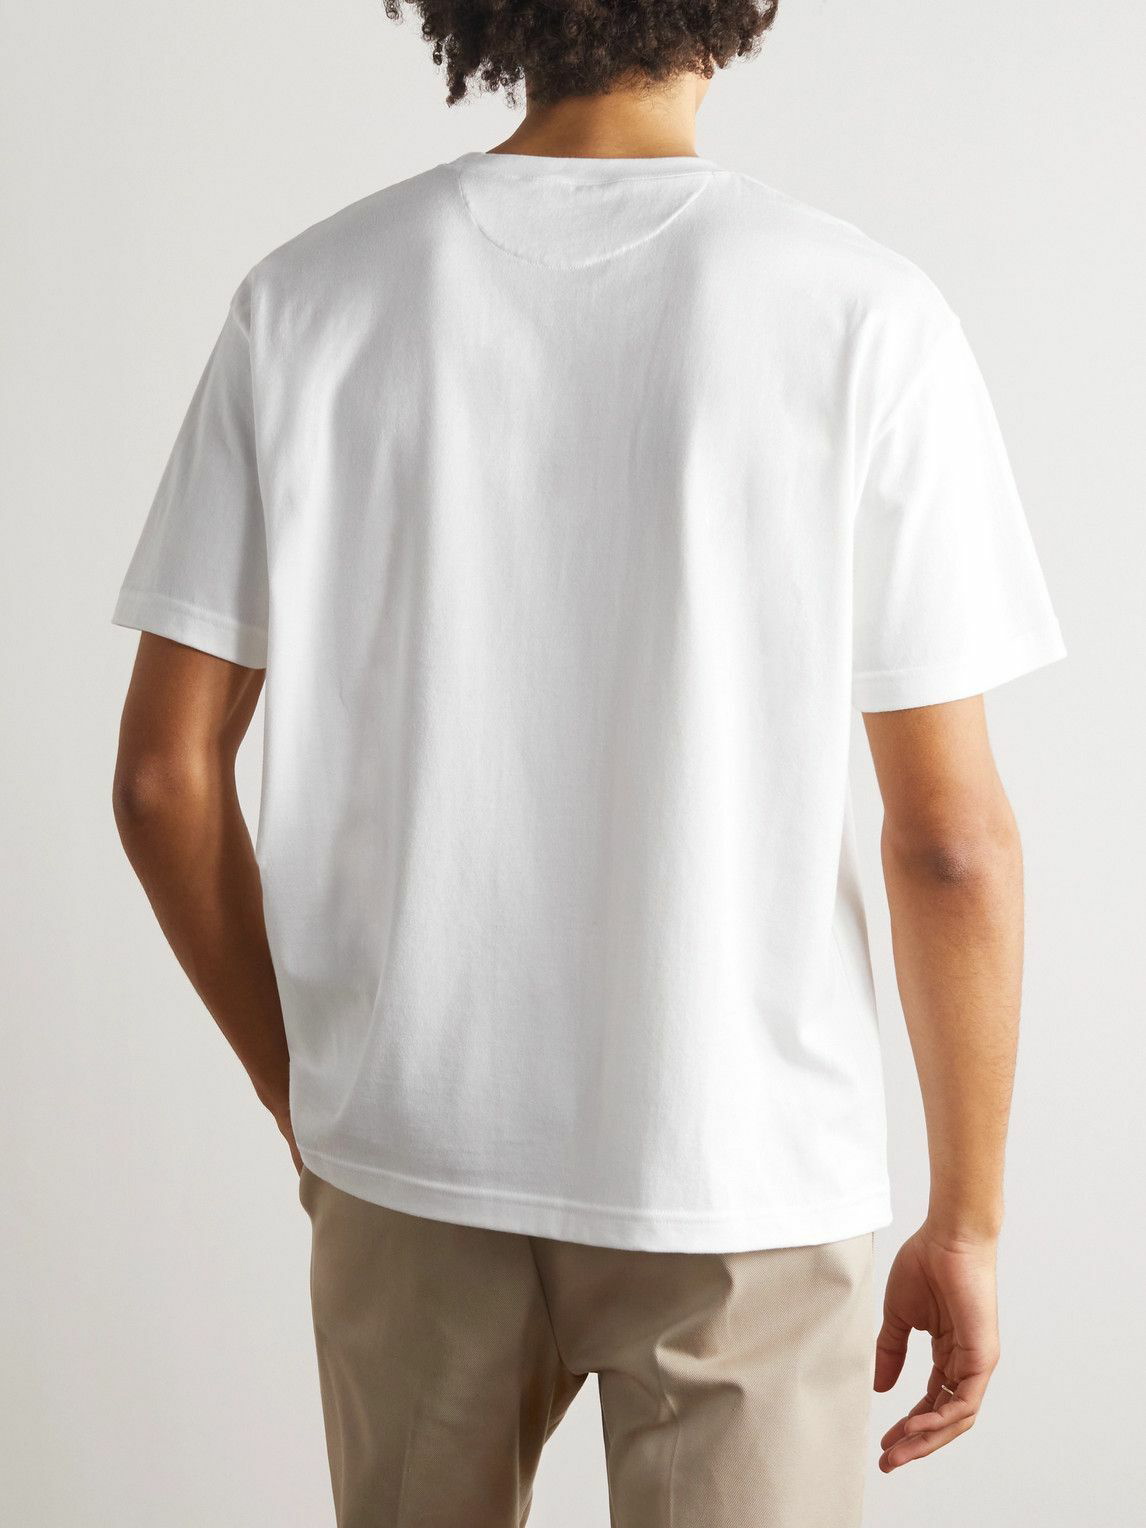 De Bonne Facture - Printed Cotton-Jersey T-Shirt - White De Bonne Facture